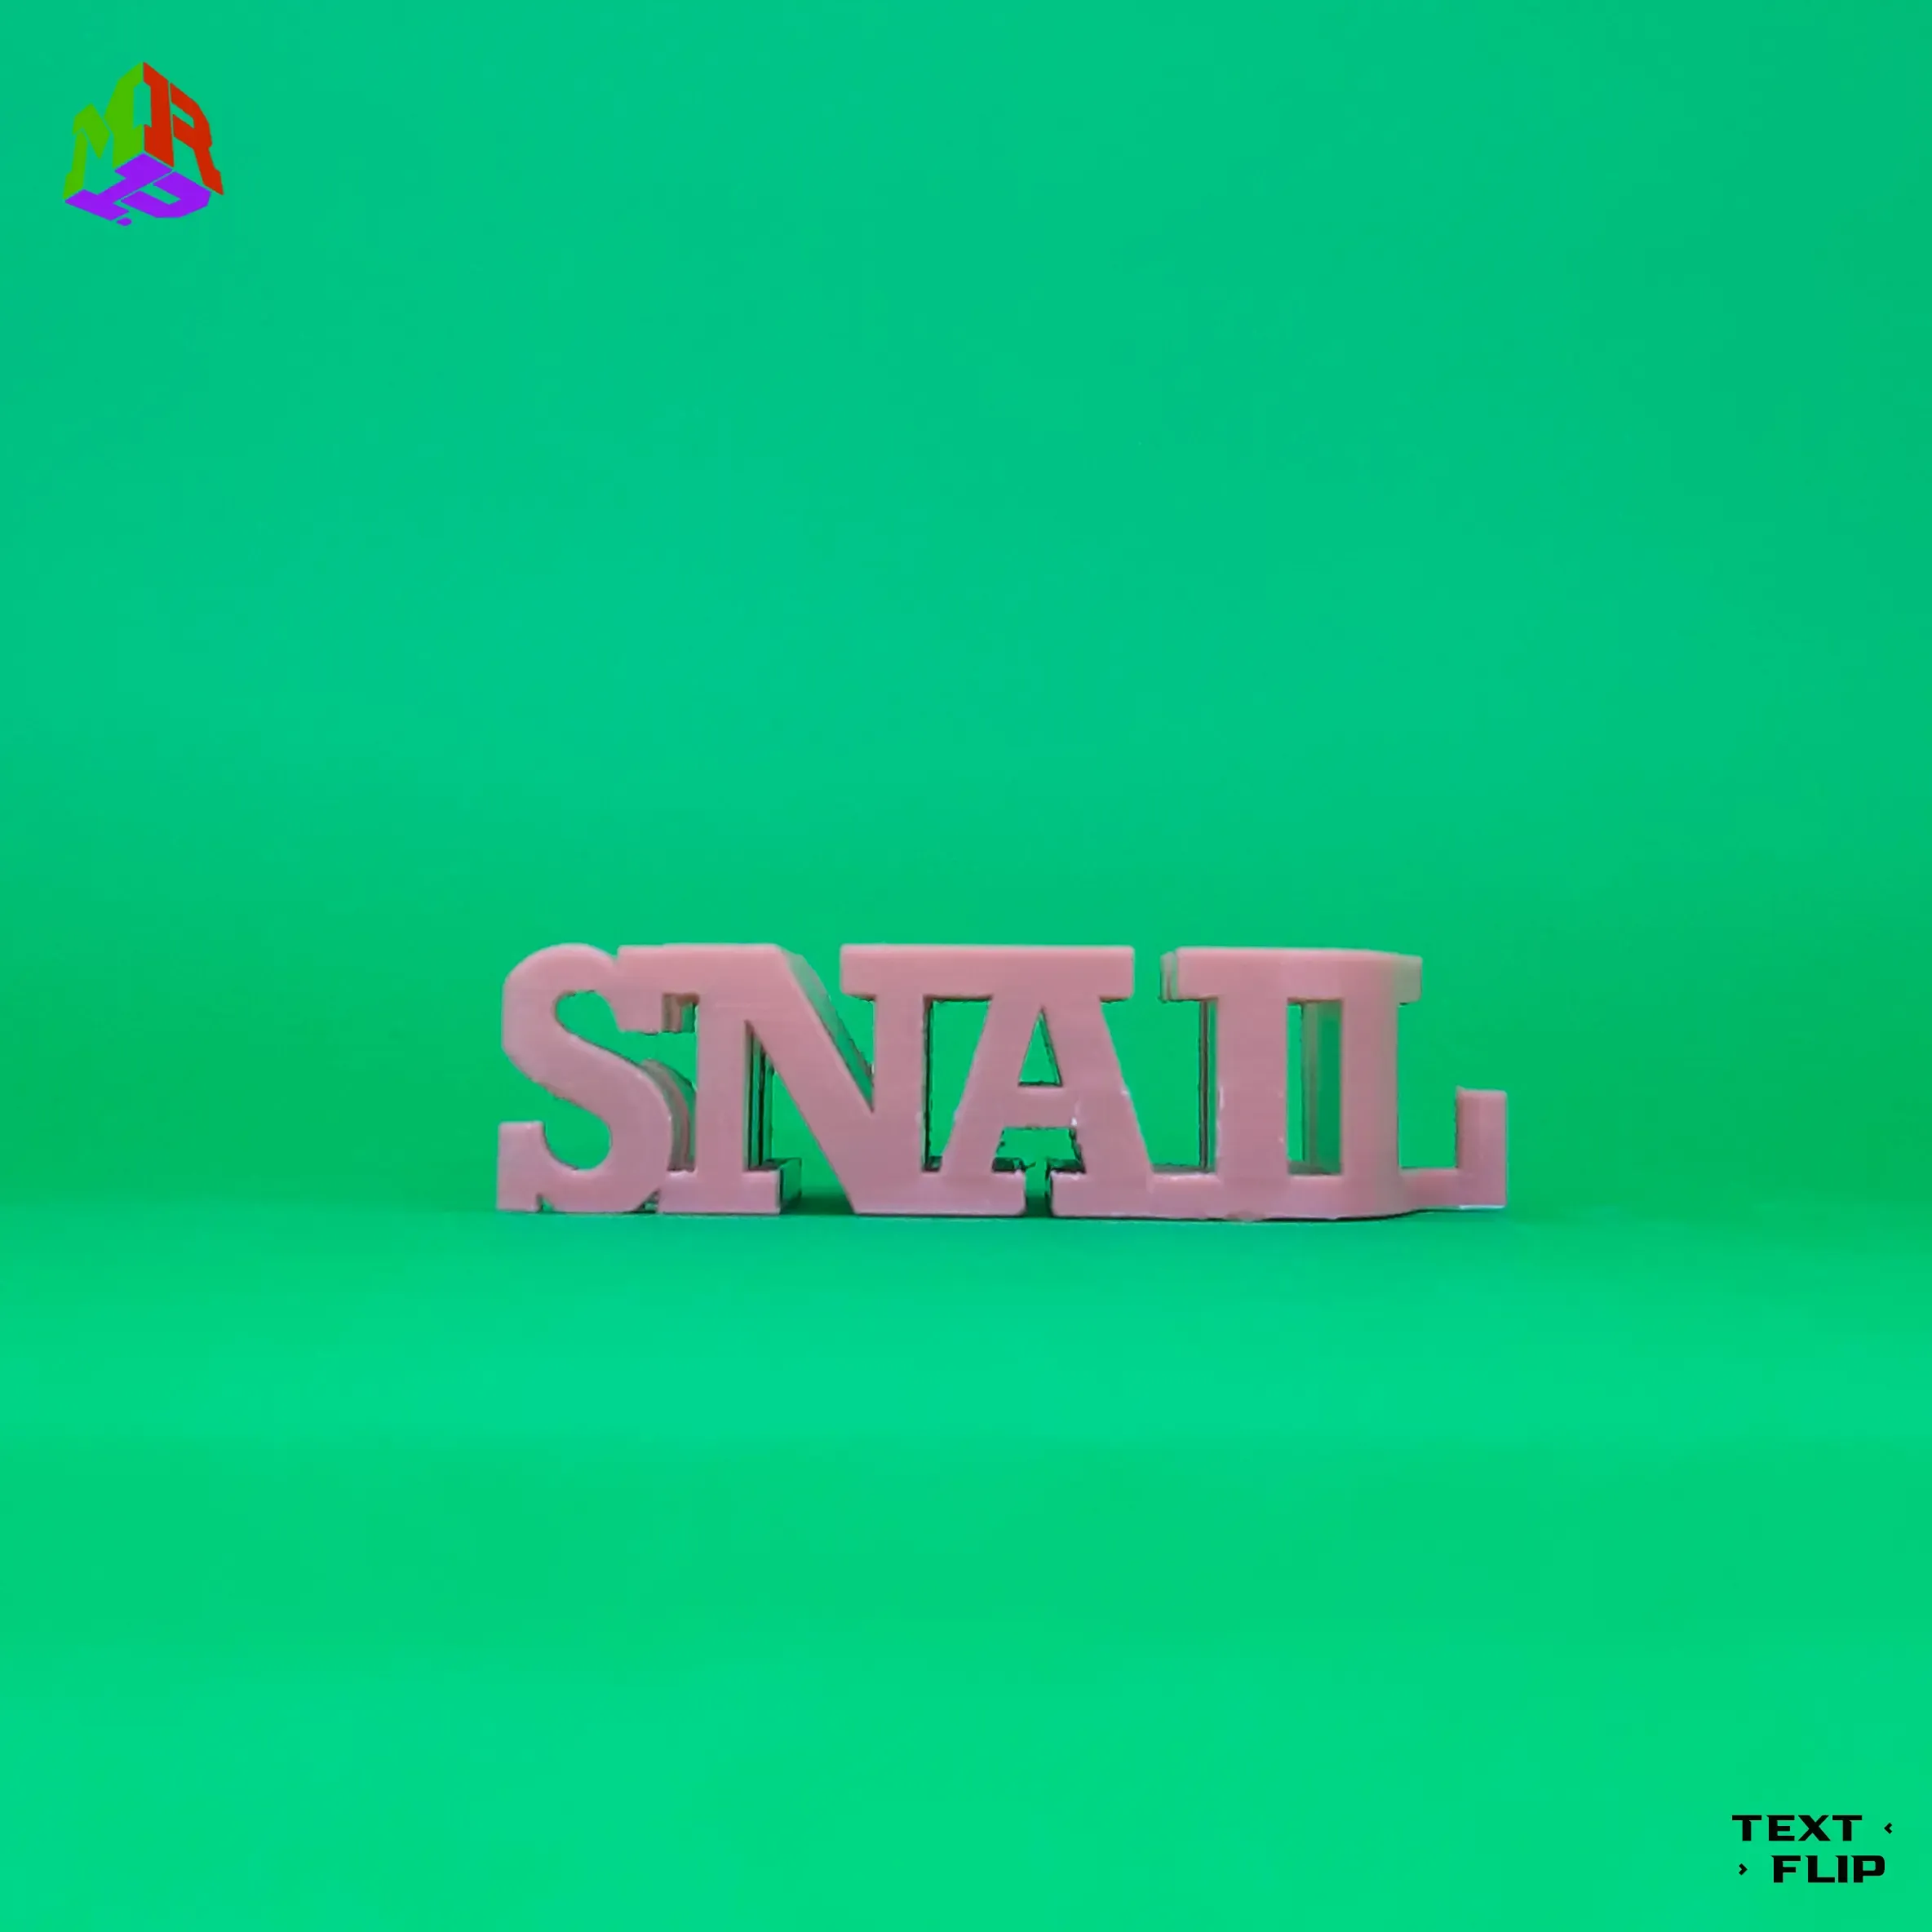 Text Flip - Snail